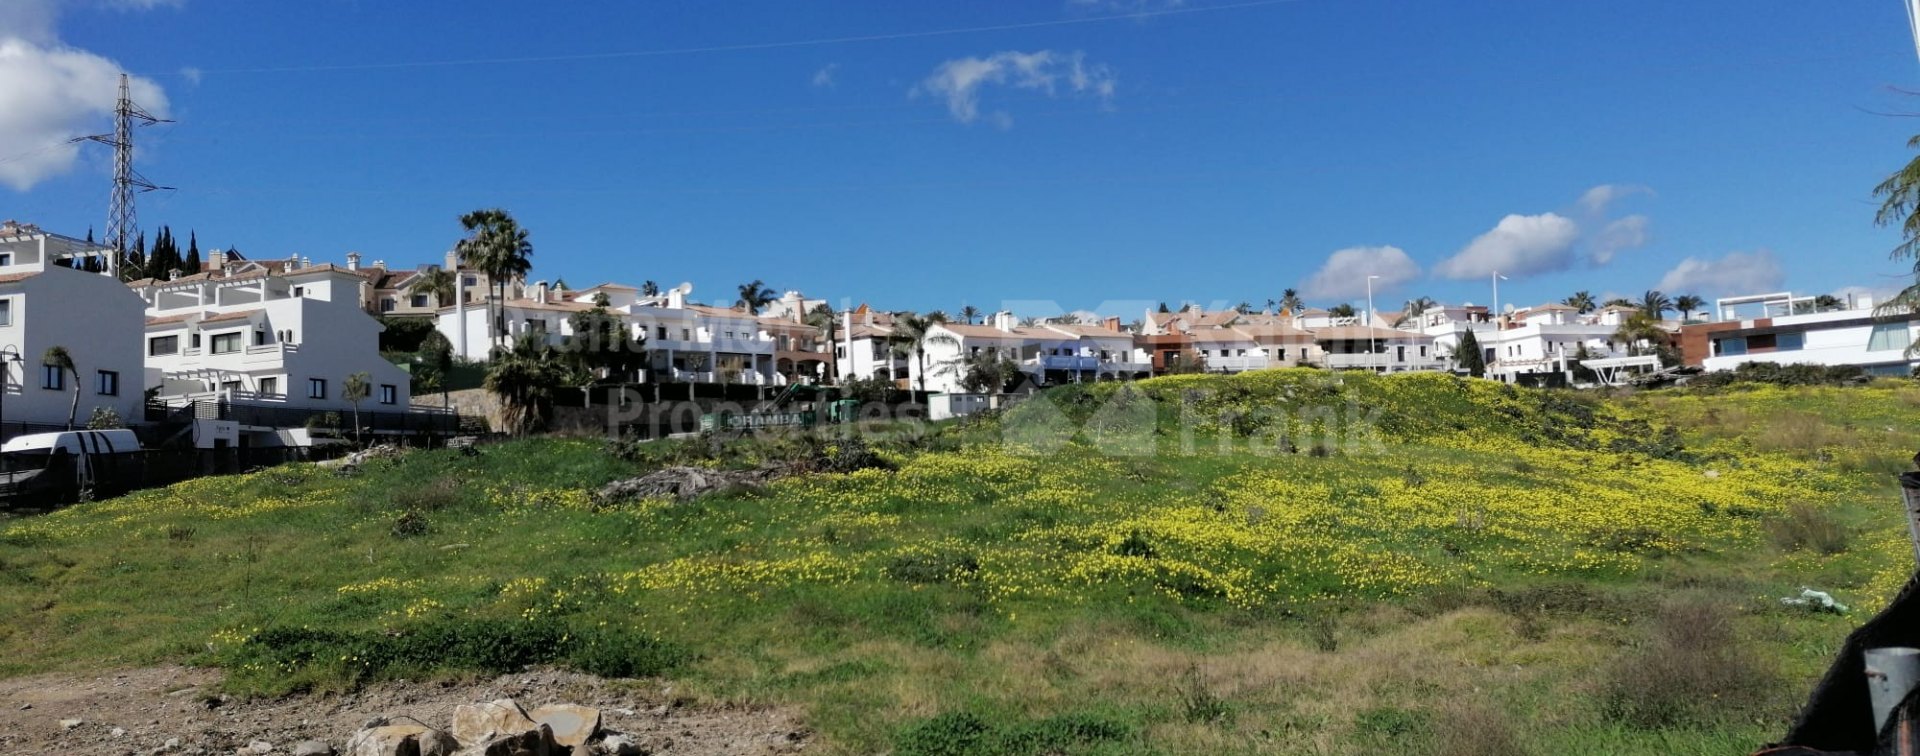 Terrains à vendre dans l'urbanisation tranquille d'El Campanario, Estepona